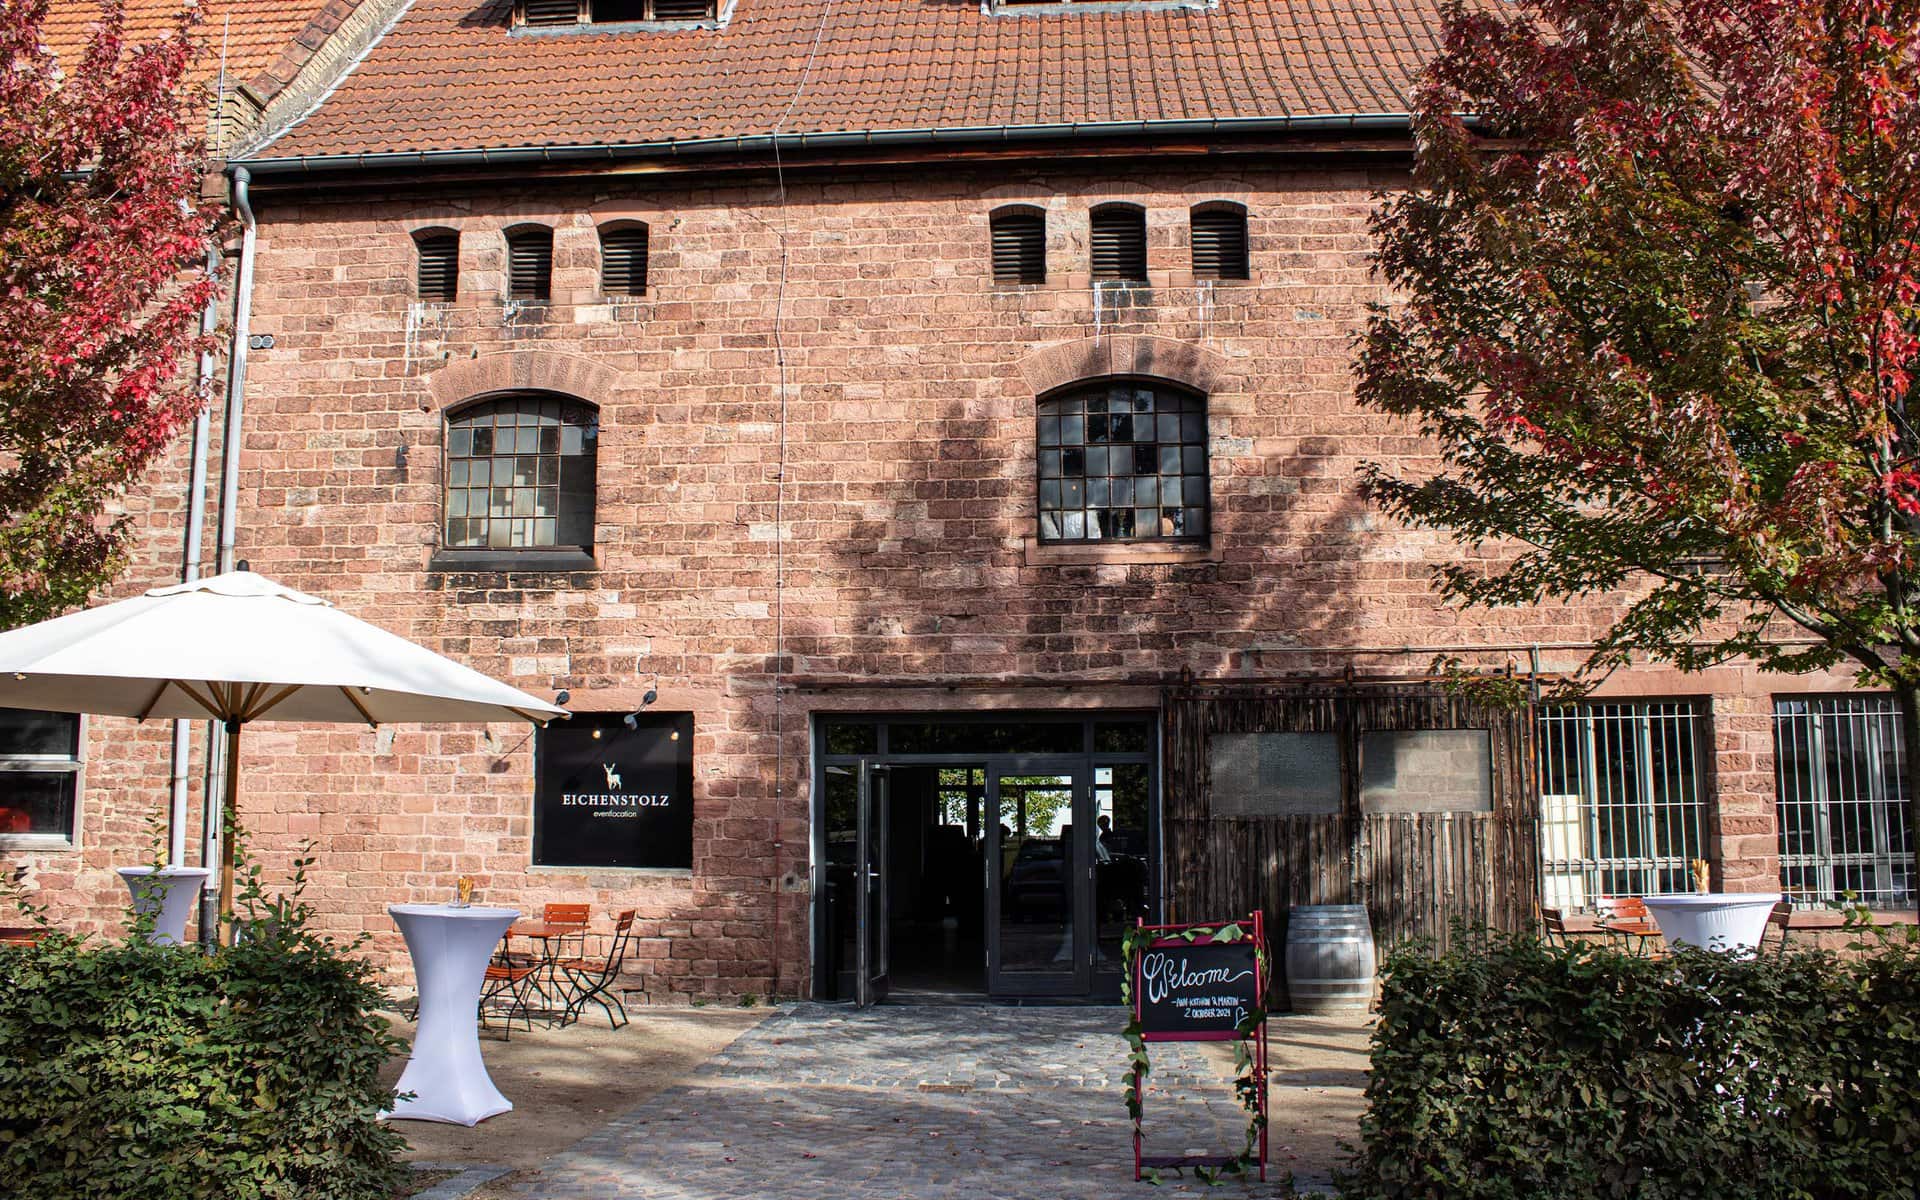 Backsteingebäude mit Bogenfenstern, Terrassenbereich und Beschilderung als Hinweis auf ein Restaurant oder Café in Ladenburg.